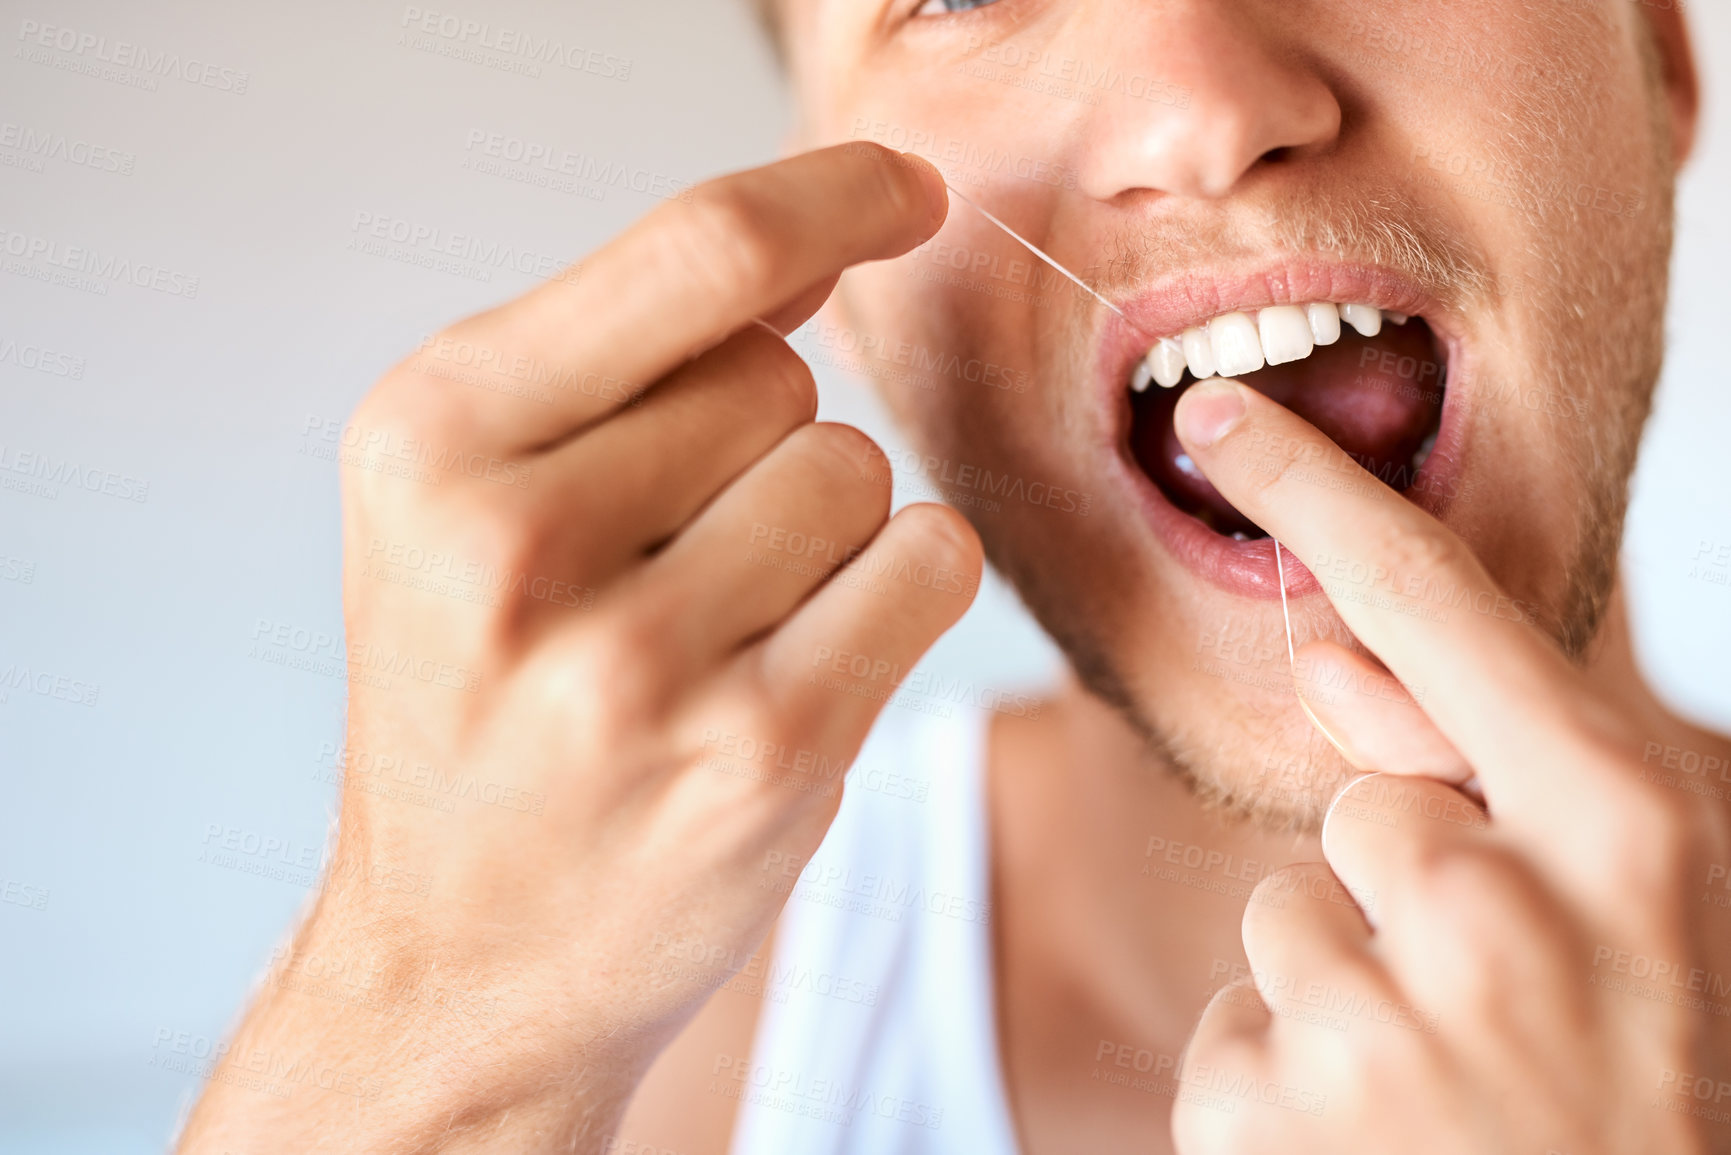 Buy stock photo Closeup shot of a young man flossing his teeth at home